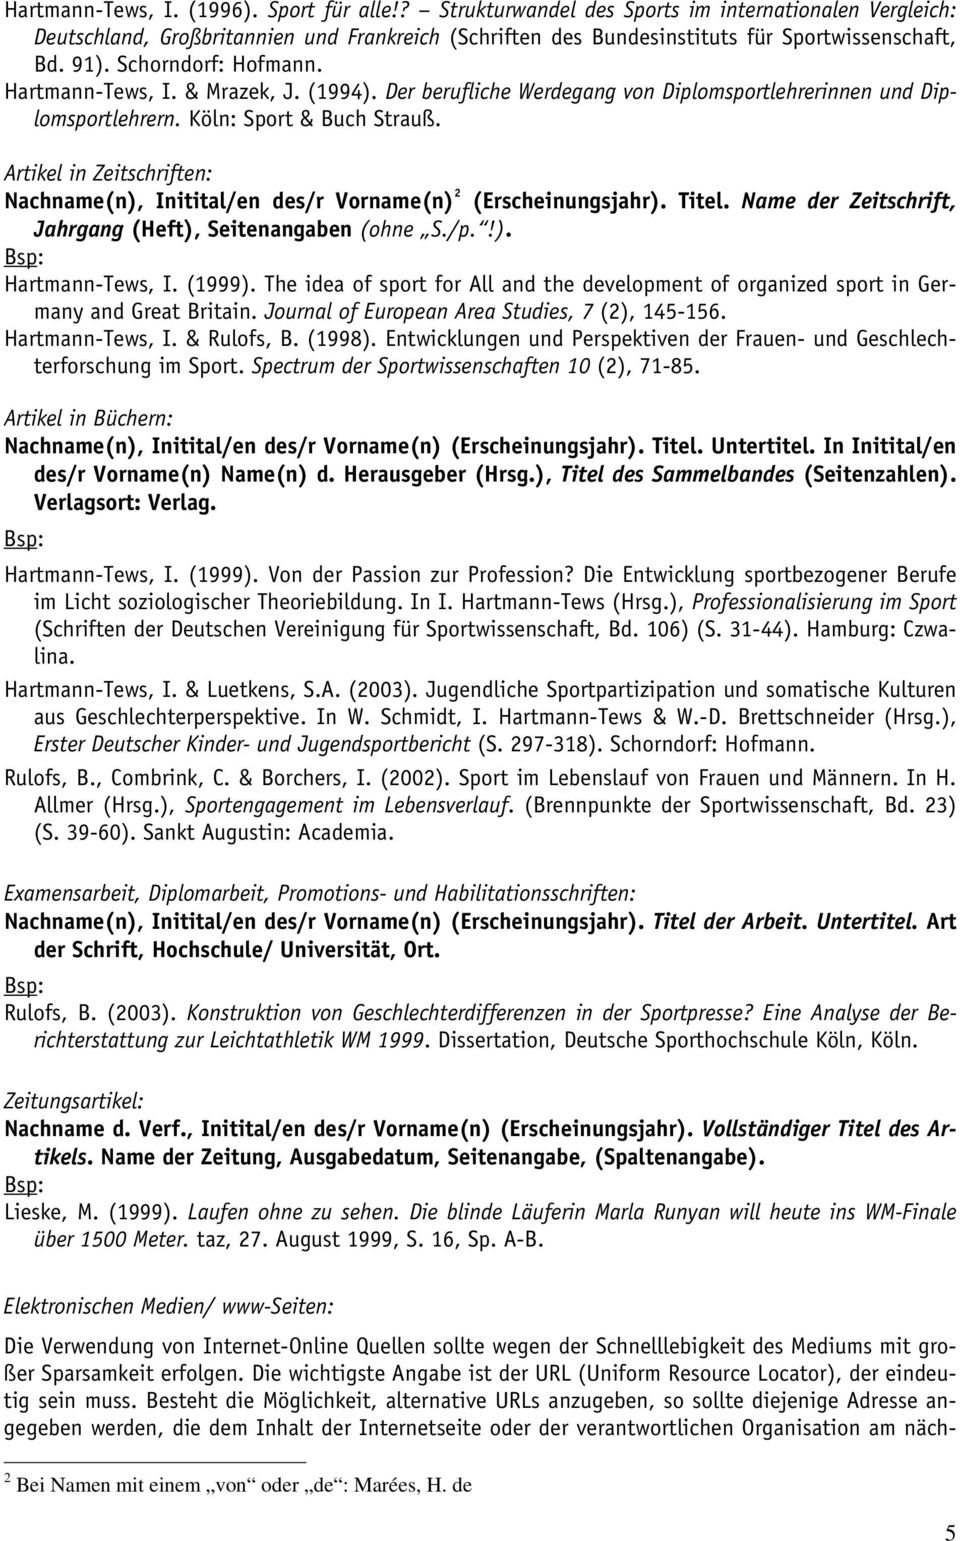 Artikel in Zeitschriften: Nachname(n), Initital/en des/r Vorname(n) 2 (Erscheinungsjahr). Titel. Name der Zeitschrift, Jahrgang (Heft), Seitenangaben (ohne S./p.!). Hartmann-Tews, I. (1999).